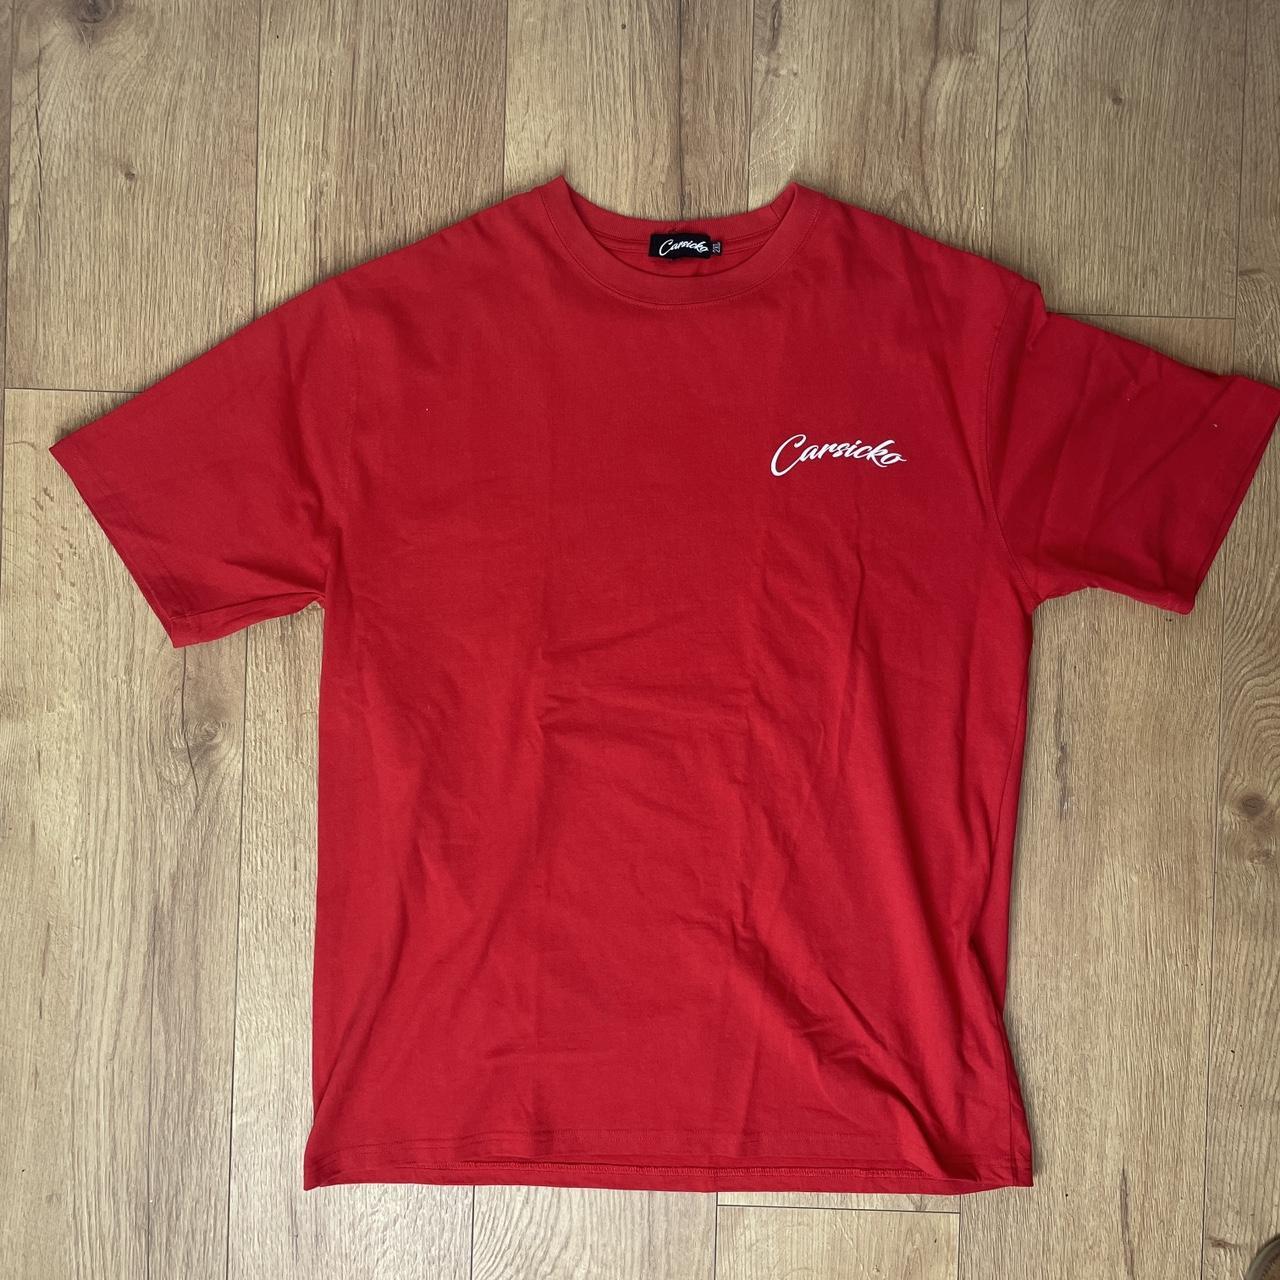 Corteiz Men's Red T-shirt | Depop